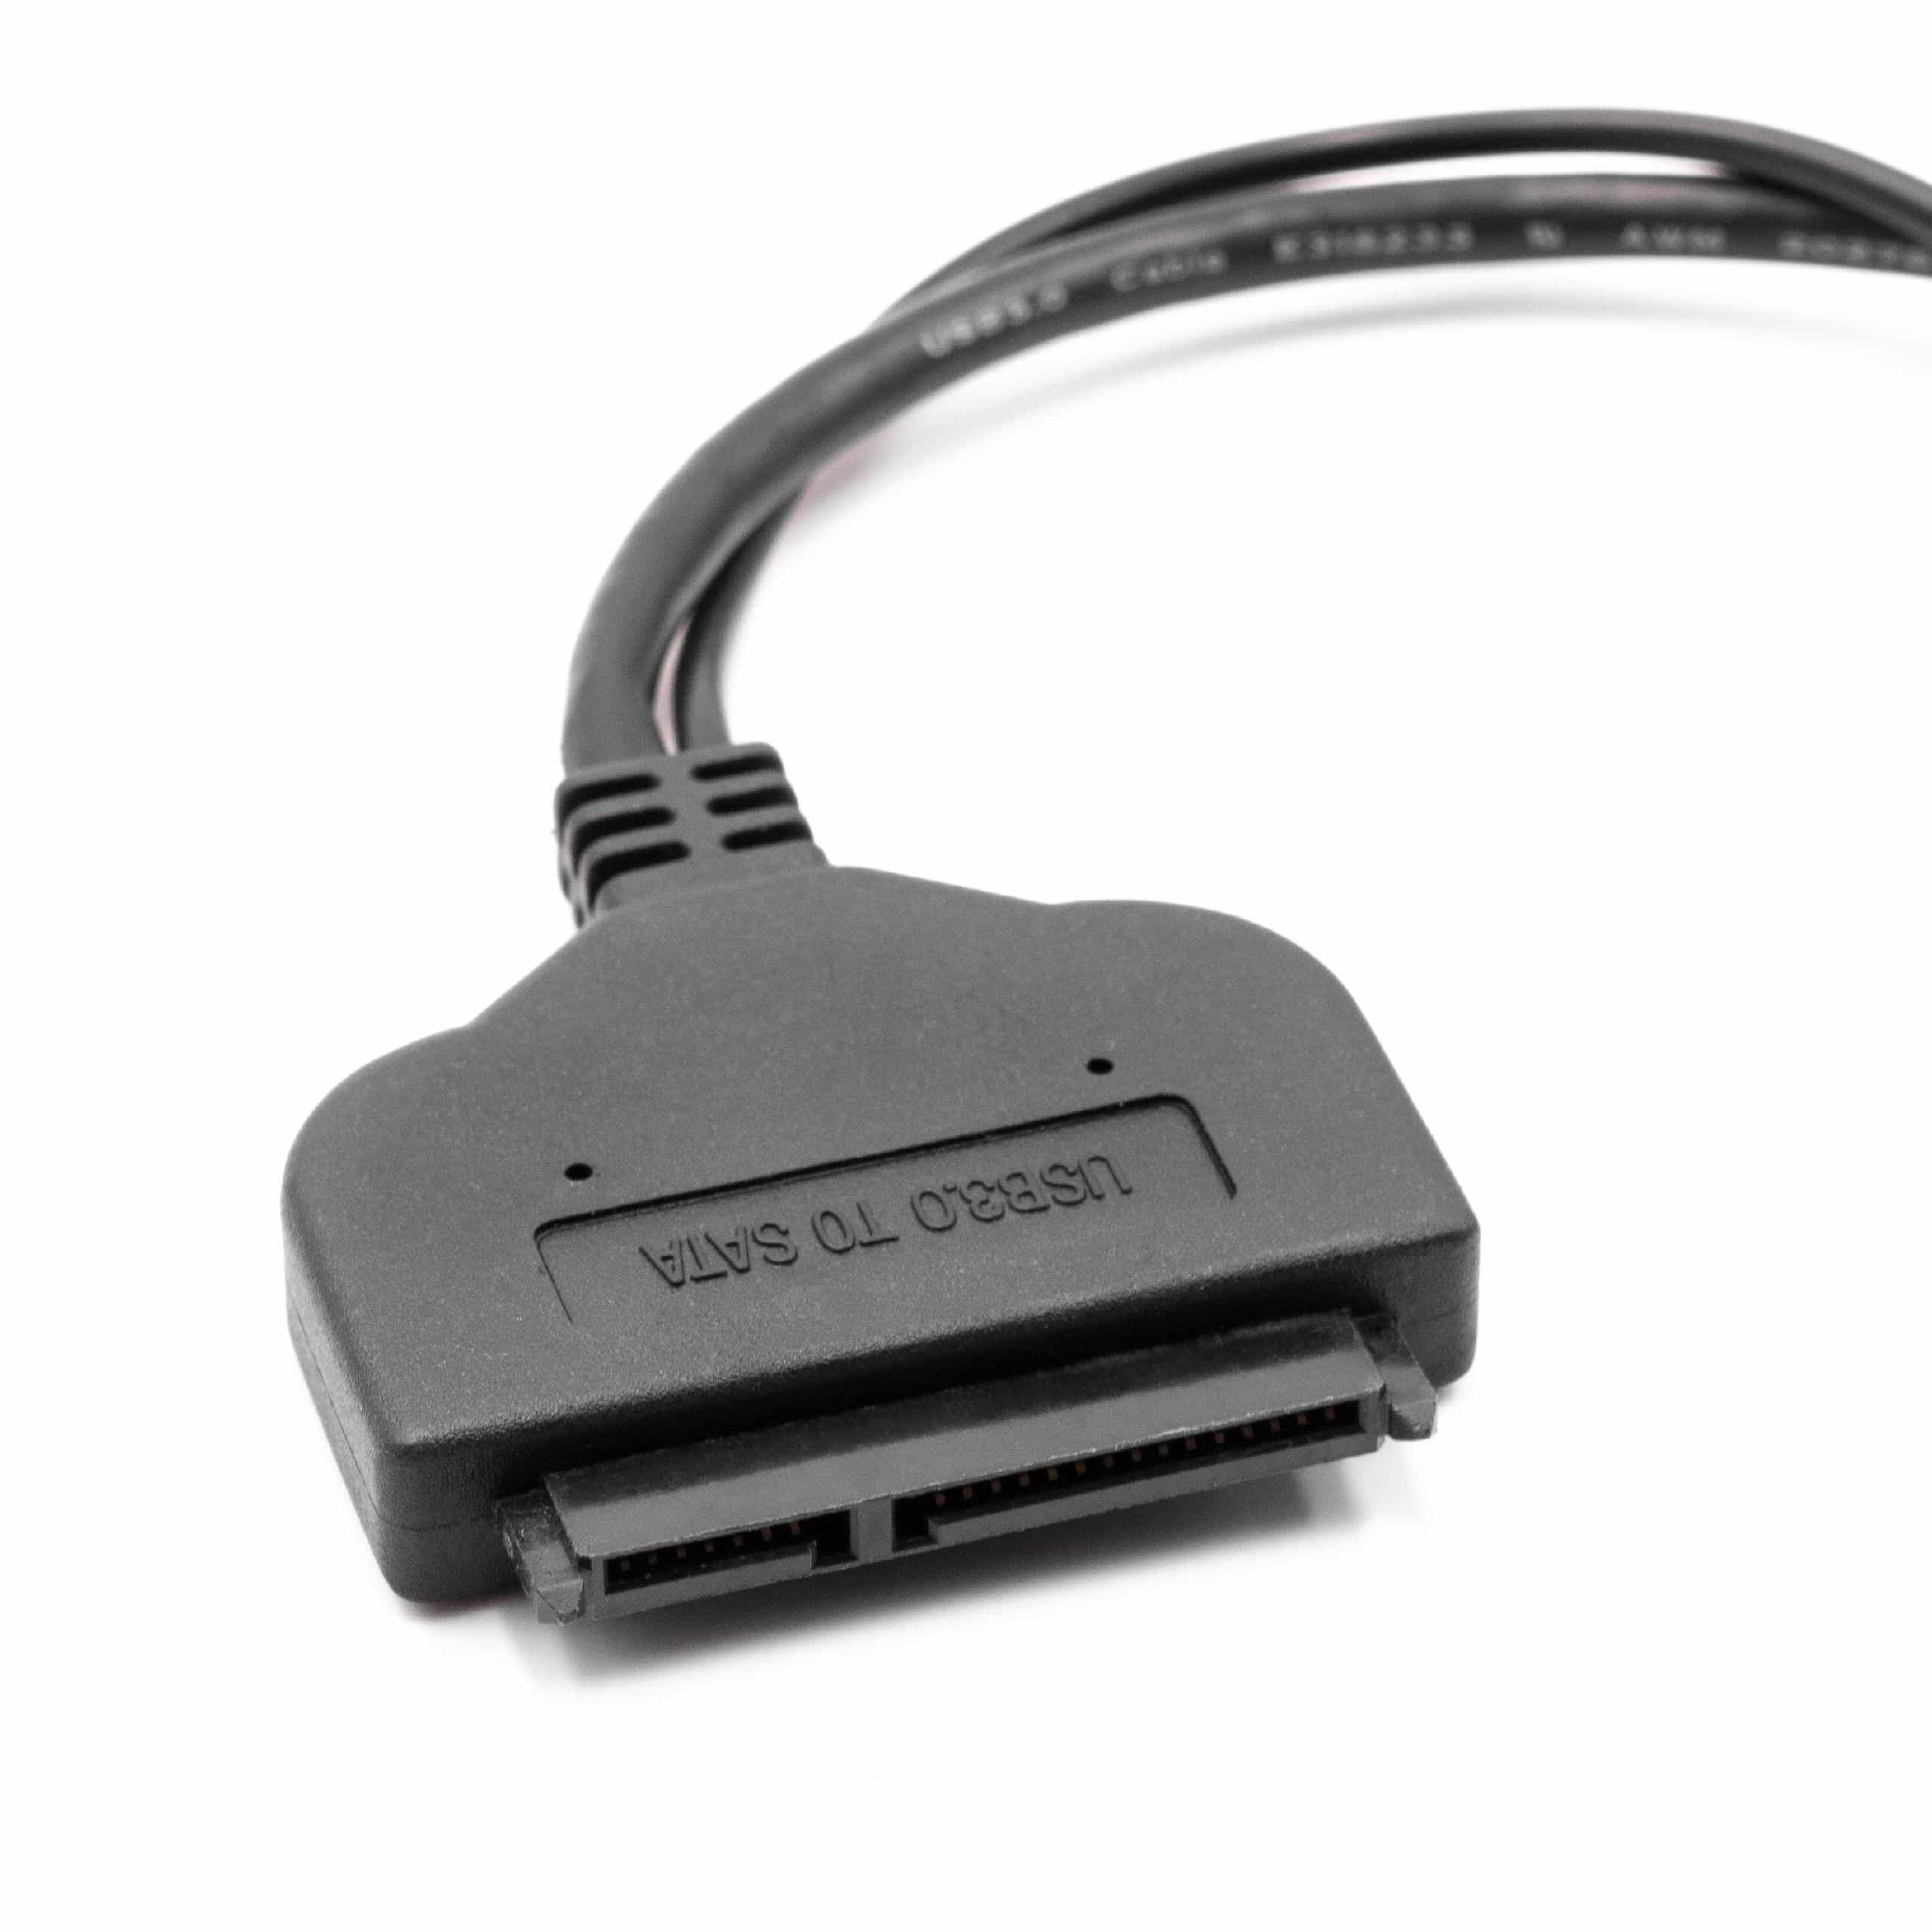 SATA III zu USB 3.0 Adapter Festplattenkabel Anschlusskabel für HDD, SSD Festplatten, Plug & Play fähig schwar